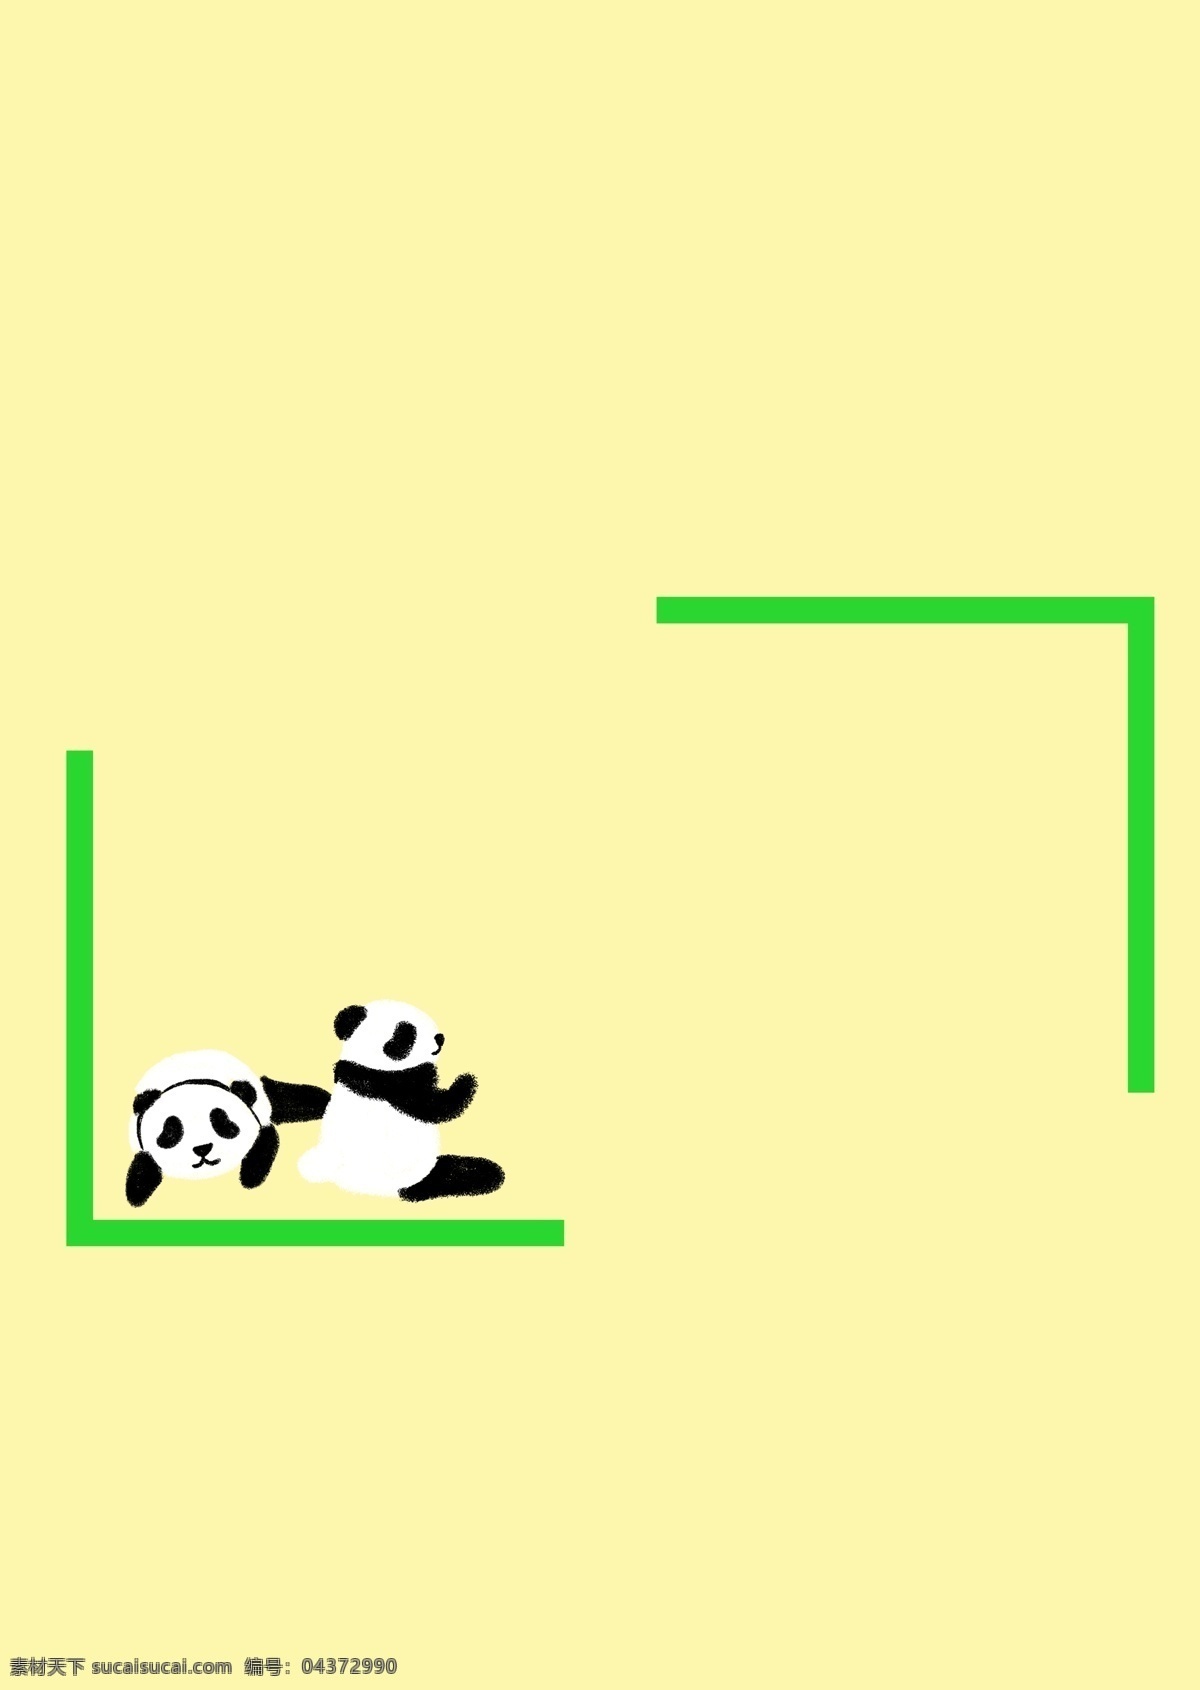 中国 风 熊猫 绿色 小 清新 创意 边框 大熊猫 两只熊猫 中国风 绿色边框 小清新 小文艺 儿童风 小动物 简约边框 可爱 漂亮 趣味 免抠图